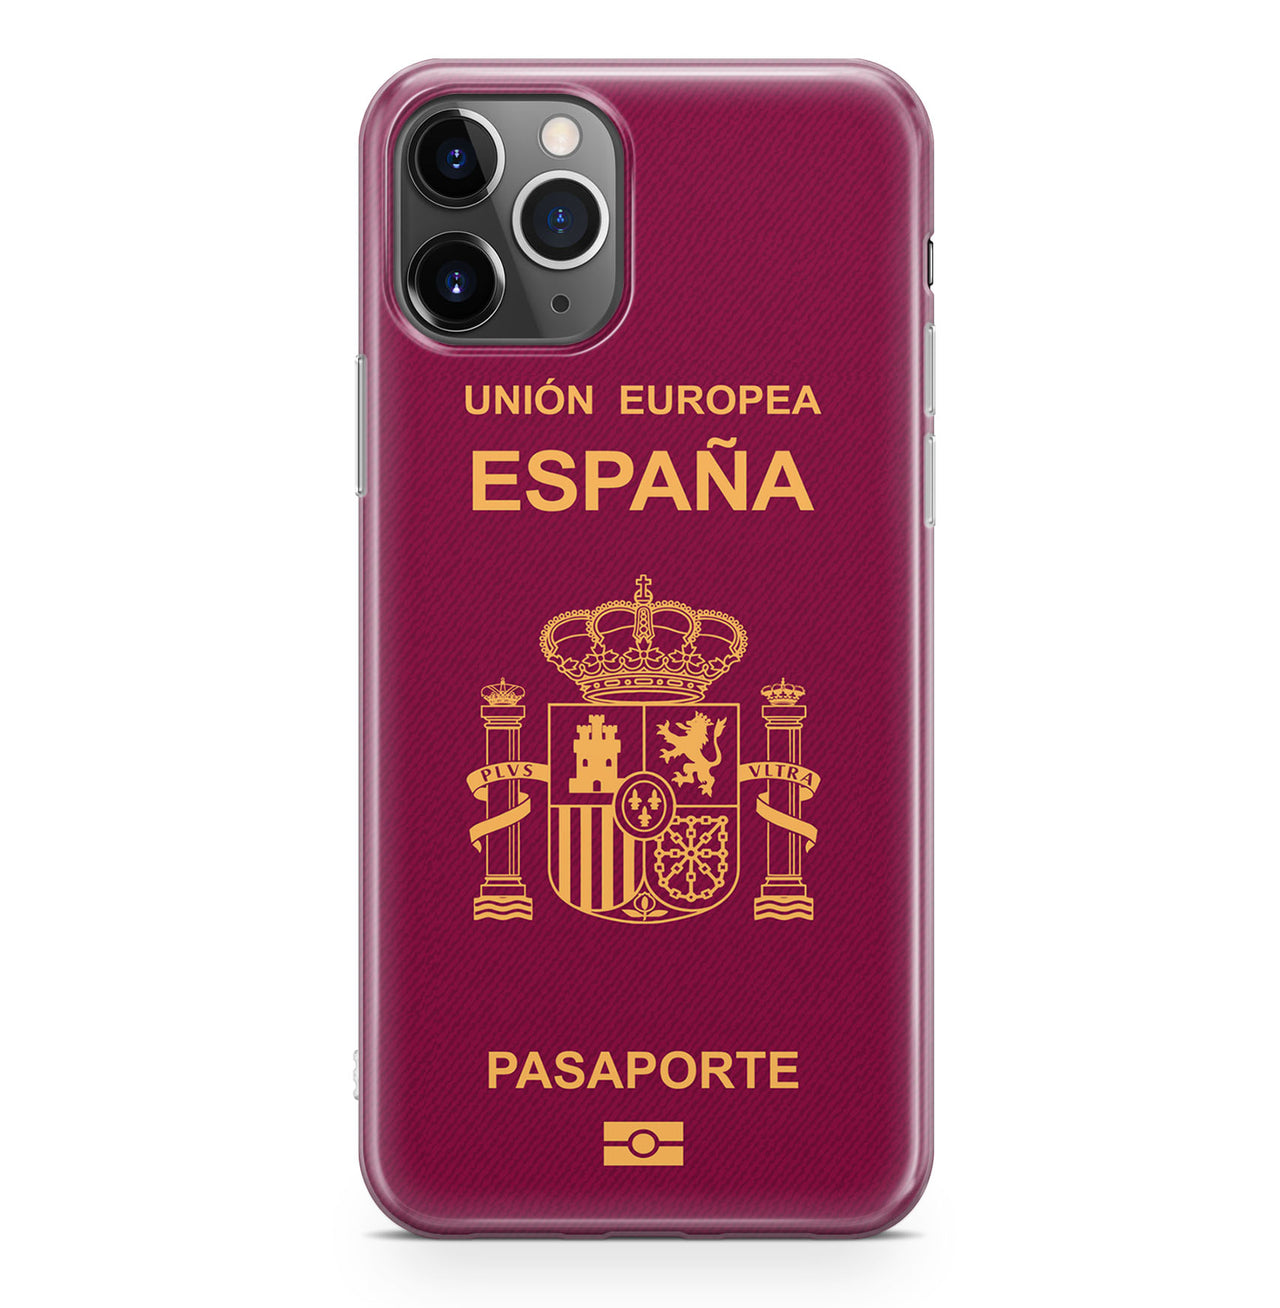 Spain Passport Designed iPhone Cases